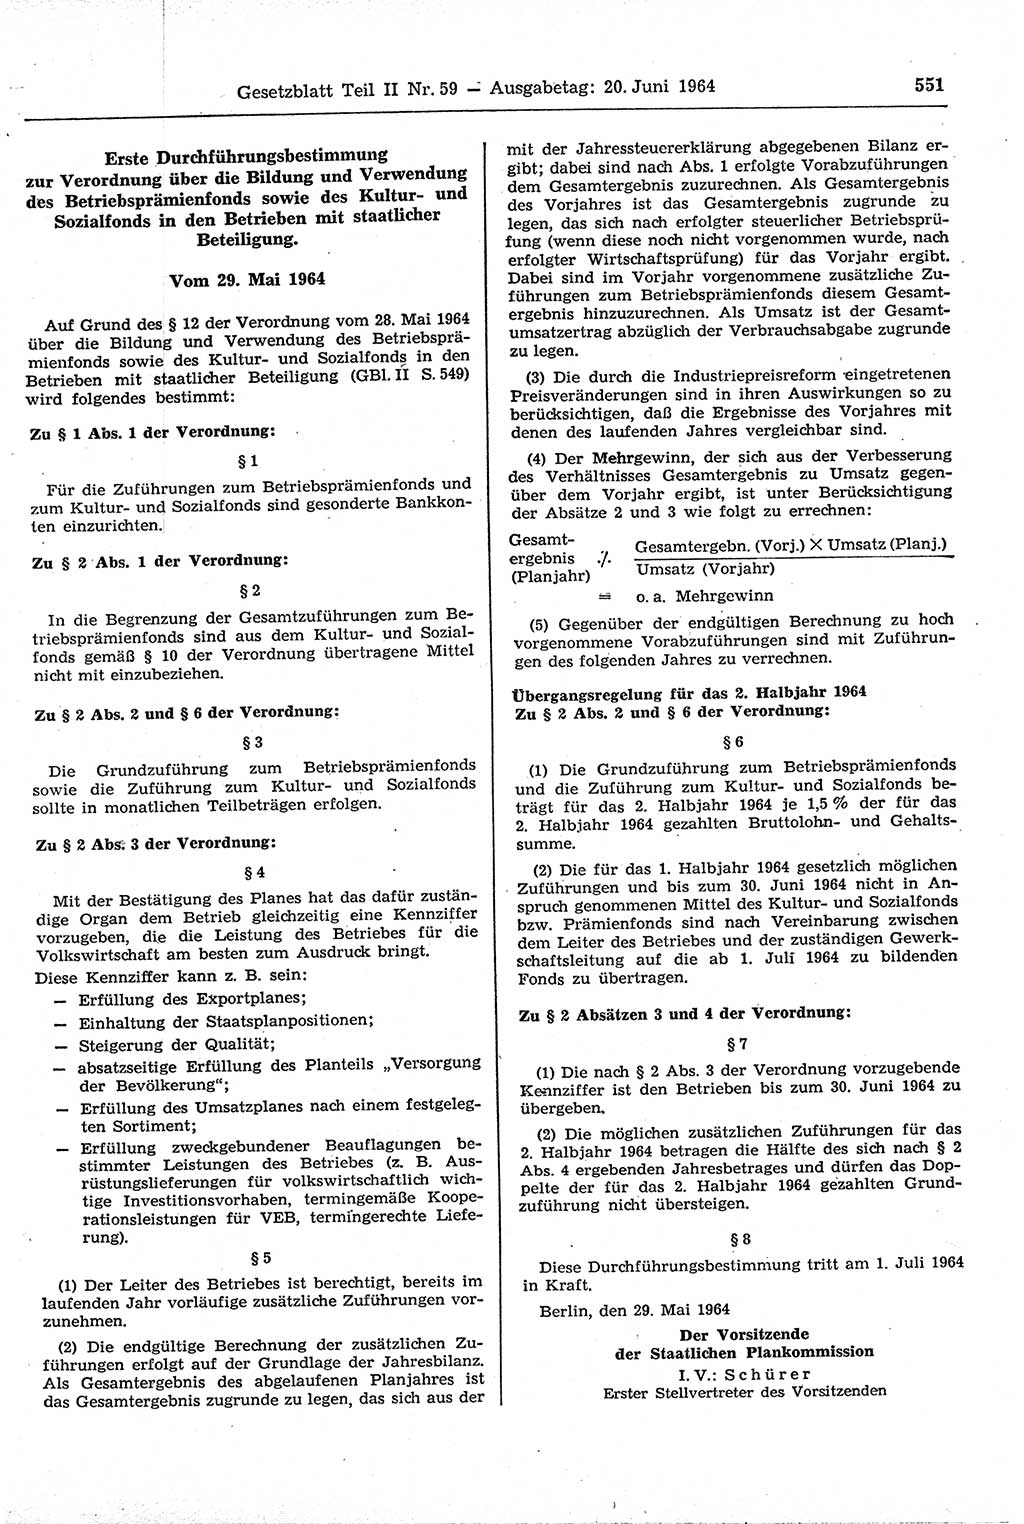 Gesetzblatt (GBl.) der Deutschen Demokratischen Republik (DDR) Teil ⅠⅠ 1964, Seite 551 (GBl. DDR ⅠⅠ 1964, S. 551)